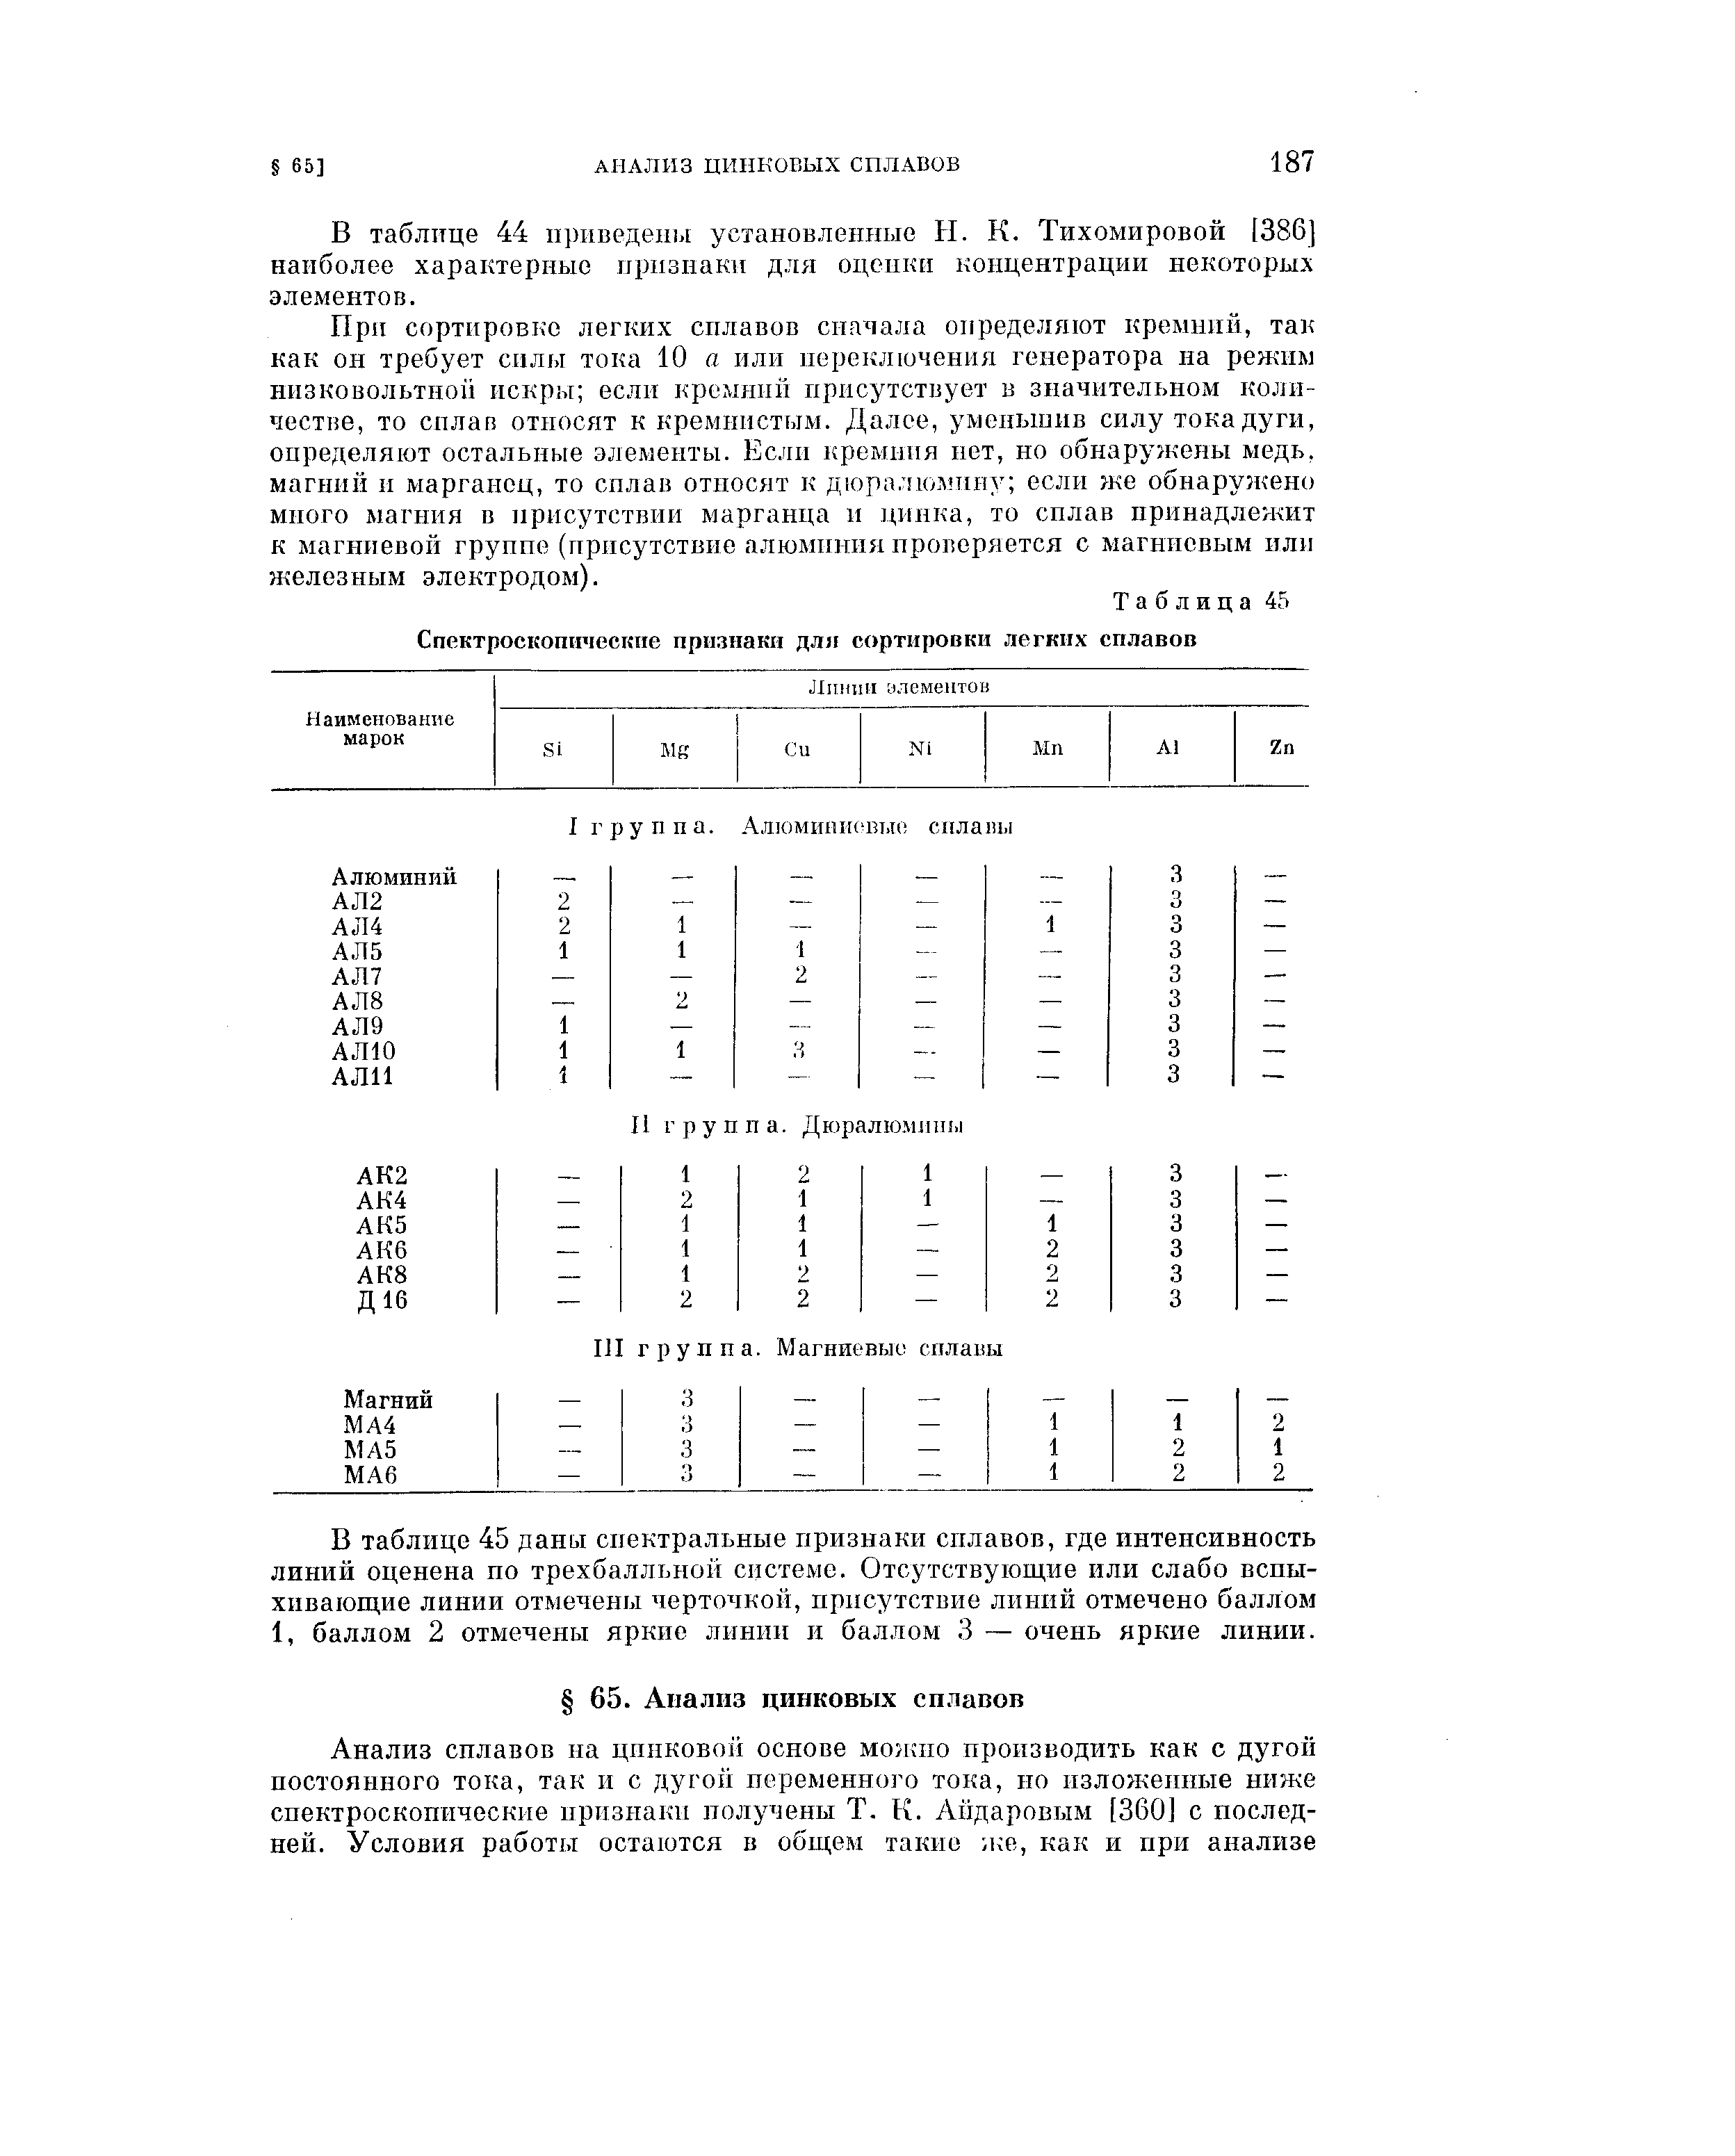 В таблице 44 нриведен1Я установленные Н. К. Тихомировой [386] наиболее характерные признаки для оценки концентрации некоторых элементов.